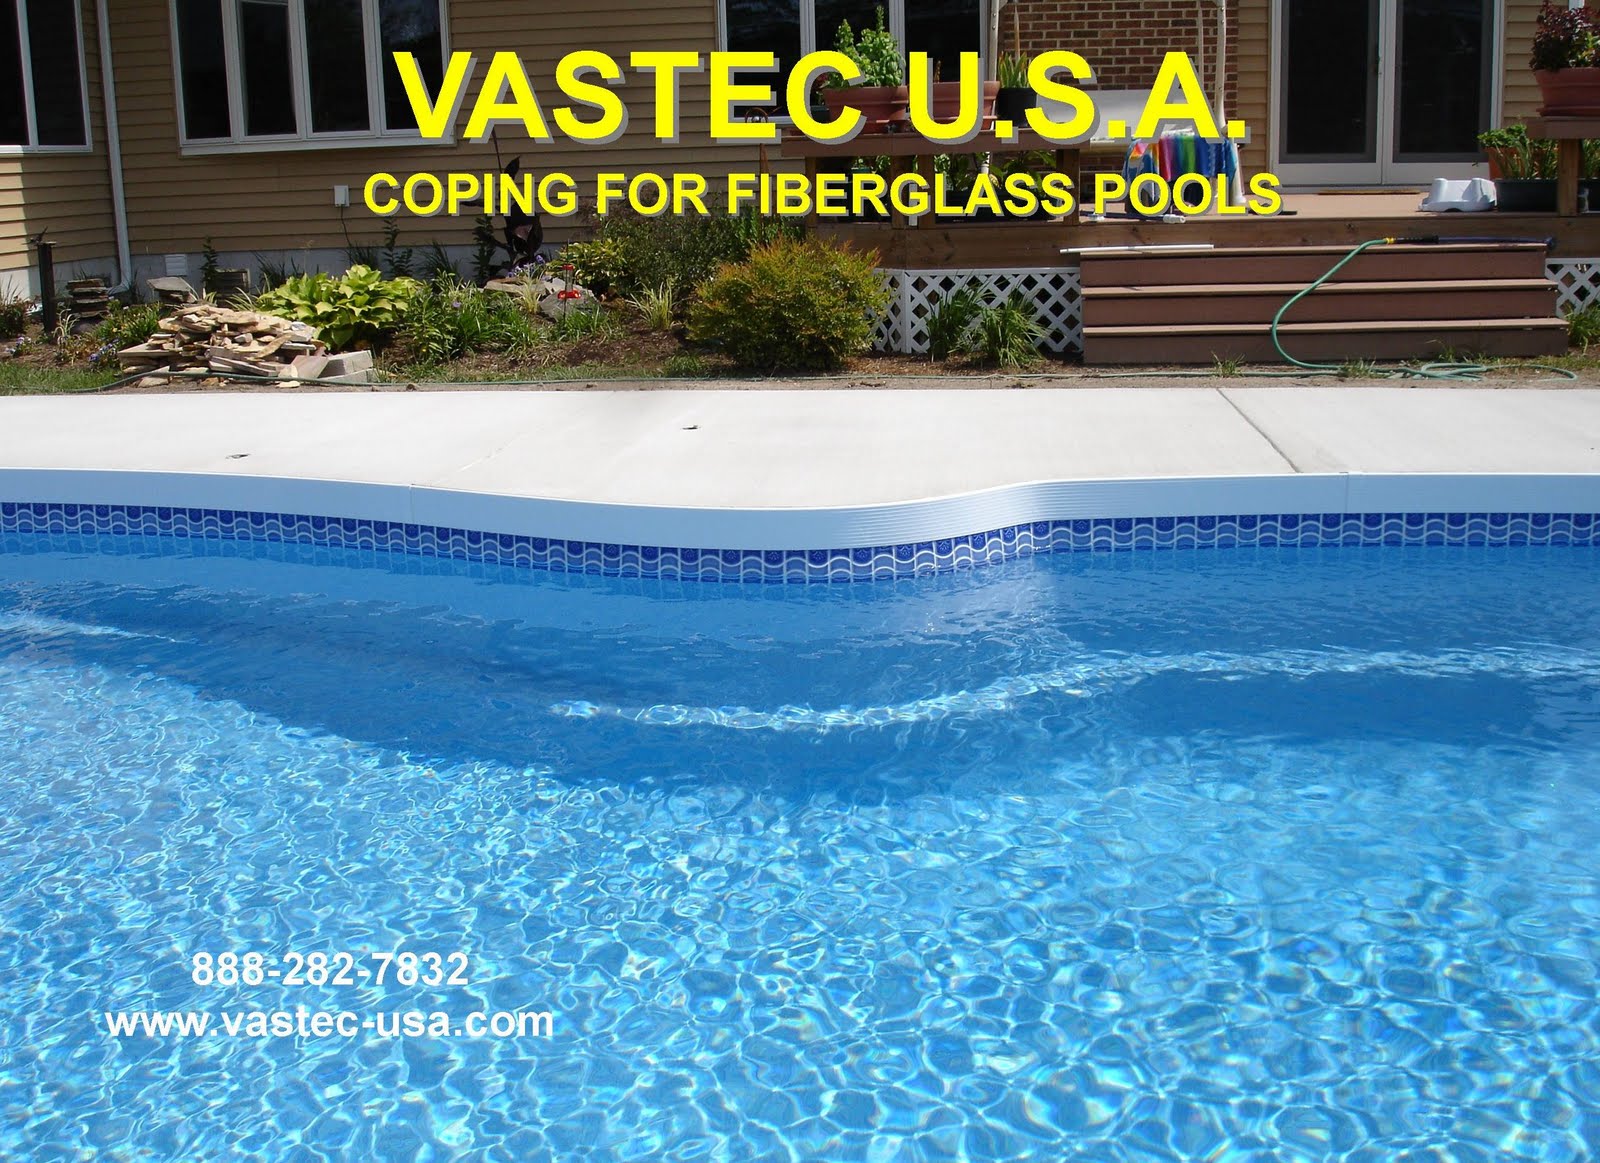 Vastec Pool Coping (VASTEC USA): October 2010